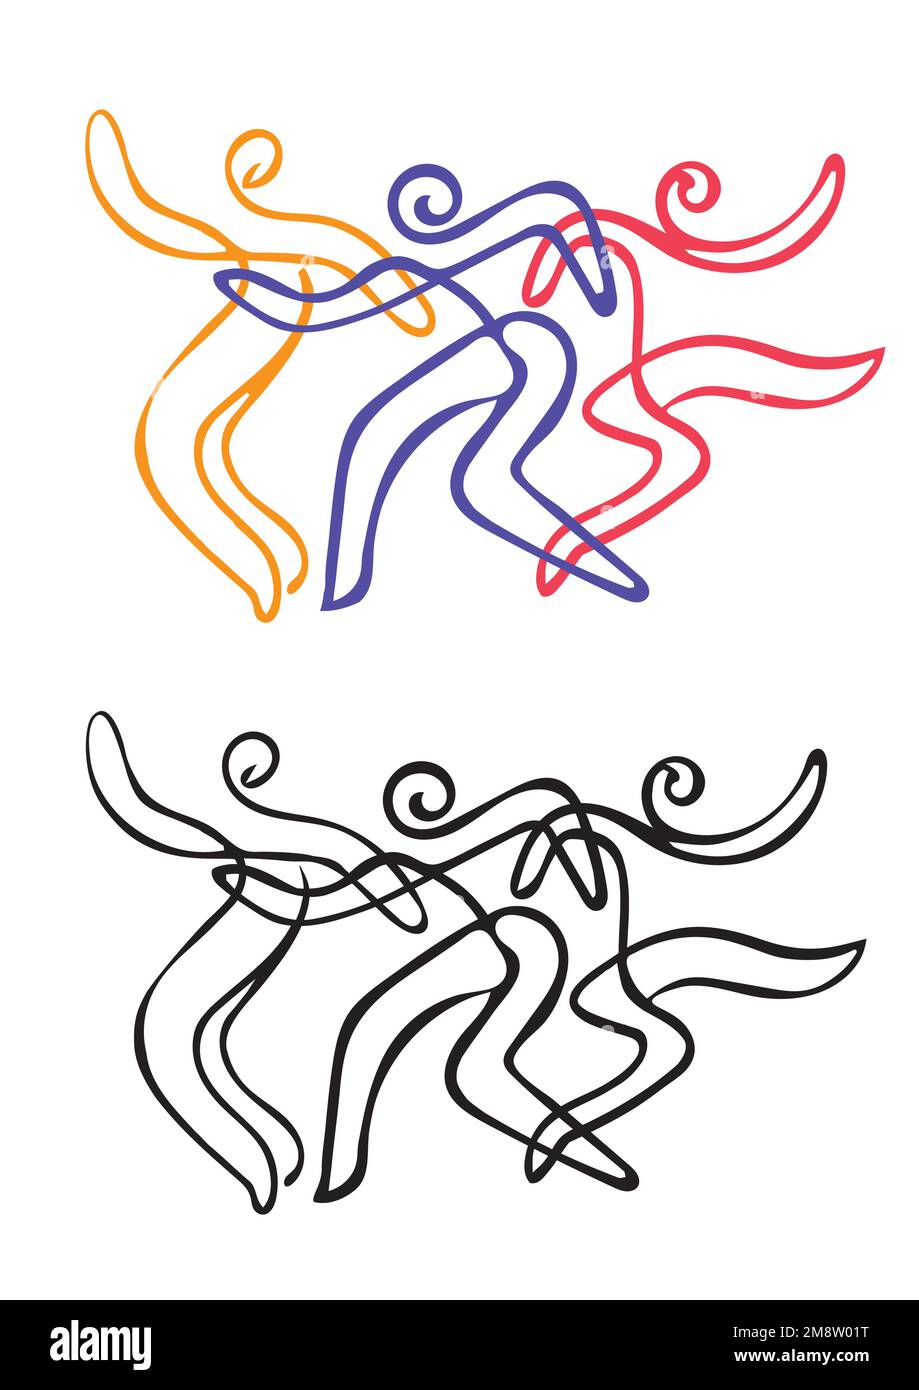 Traditionelle tanzende Menschen, Tanzgruppe, Symbol für Volkstanz. Ausdrucksstarke, mit Linienart stilisierte Illustrationen lebendiger Tänzer. Stock Vektor